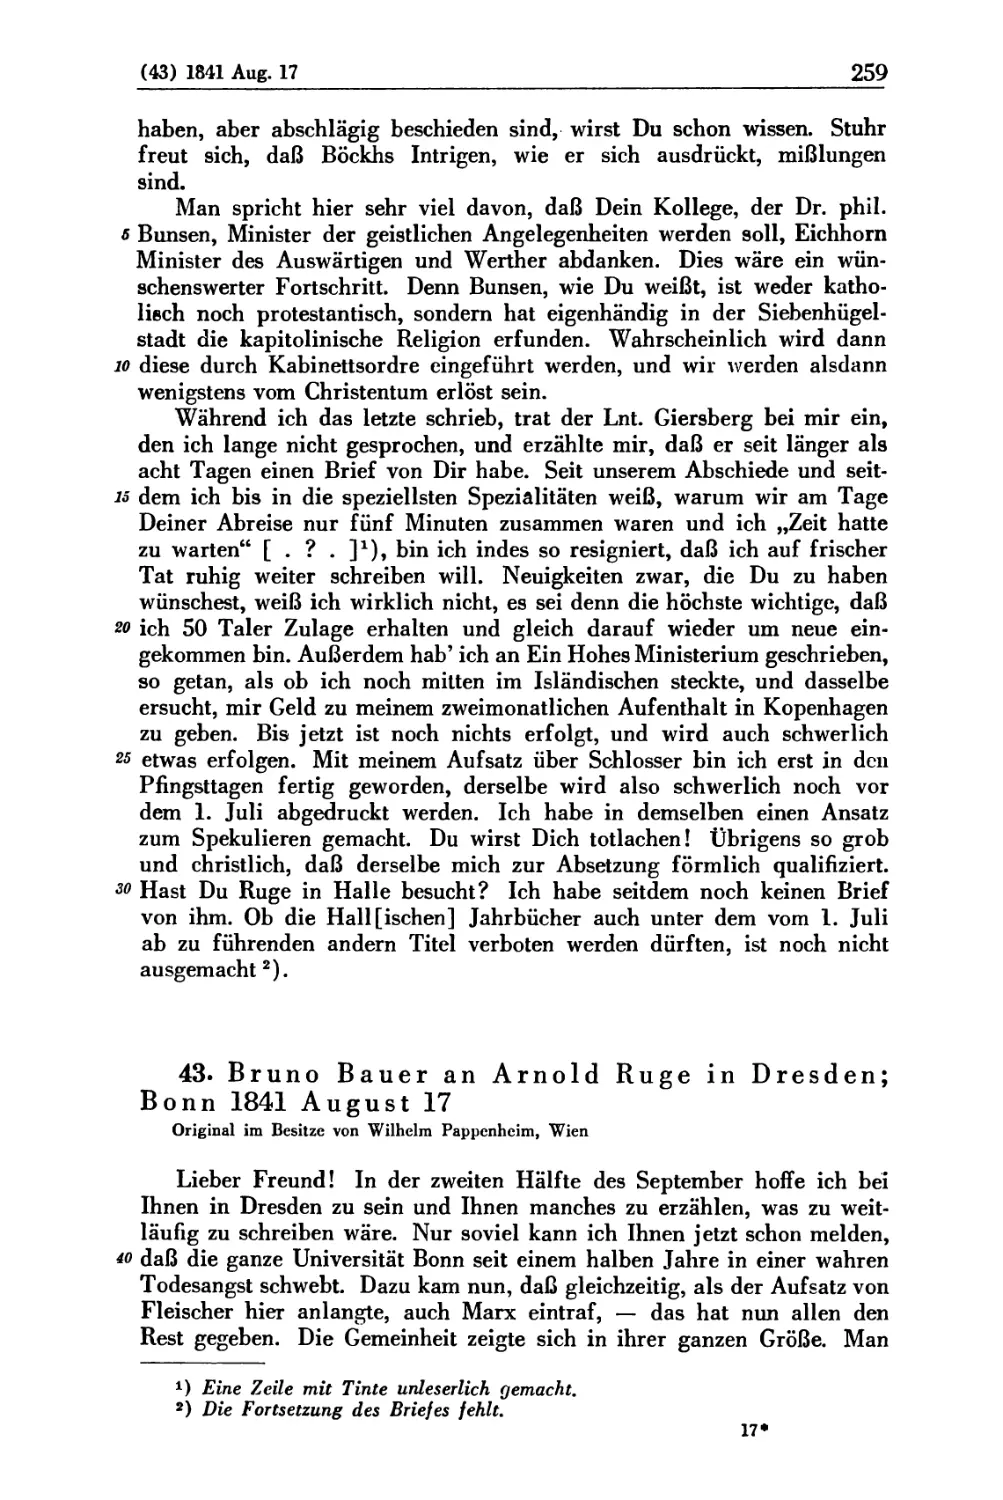 43. Bruno Bauer an Arnold Ruge in Dresden; Bonn 1841 August 17